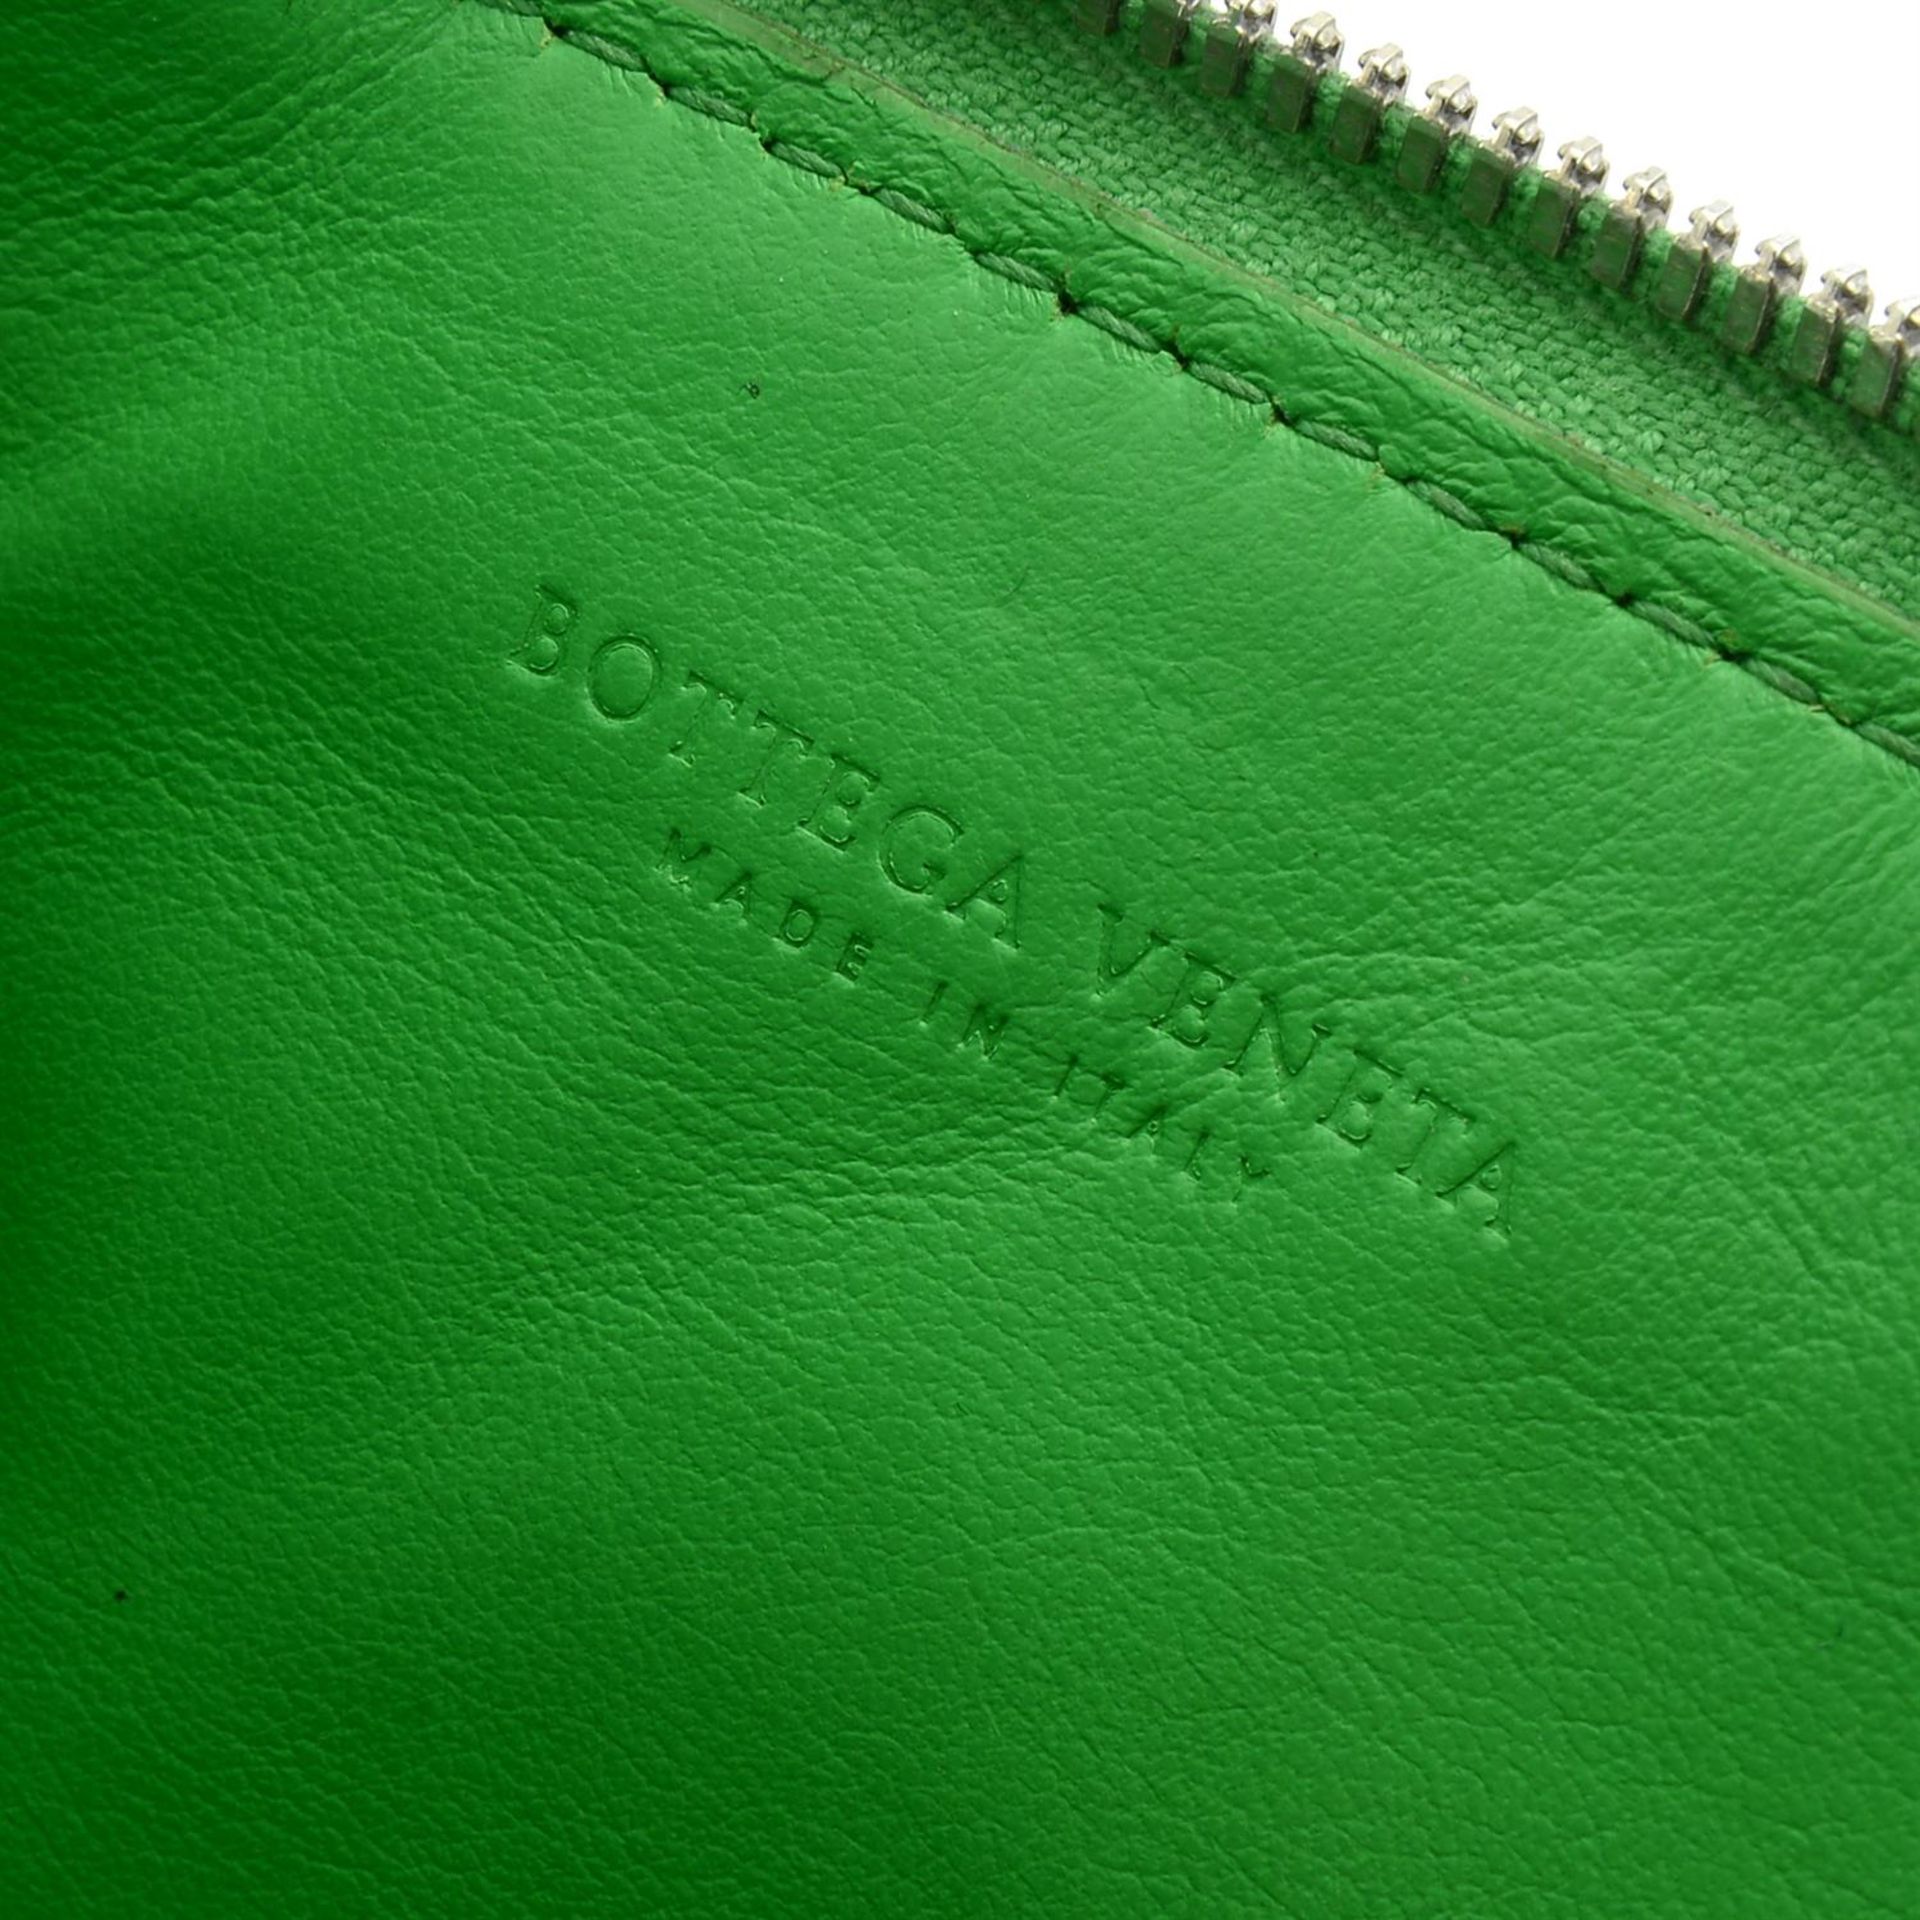 BOTTEGA VENETA - a small green Intrecciato leather coin purse. - Image 4 of 4